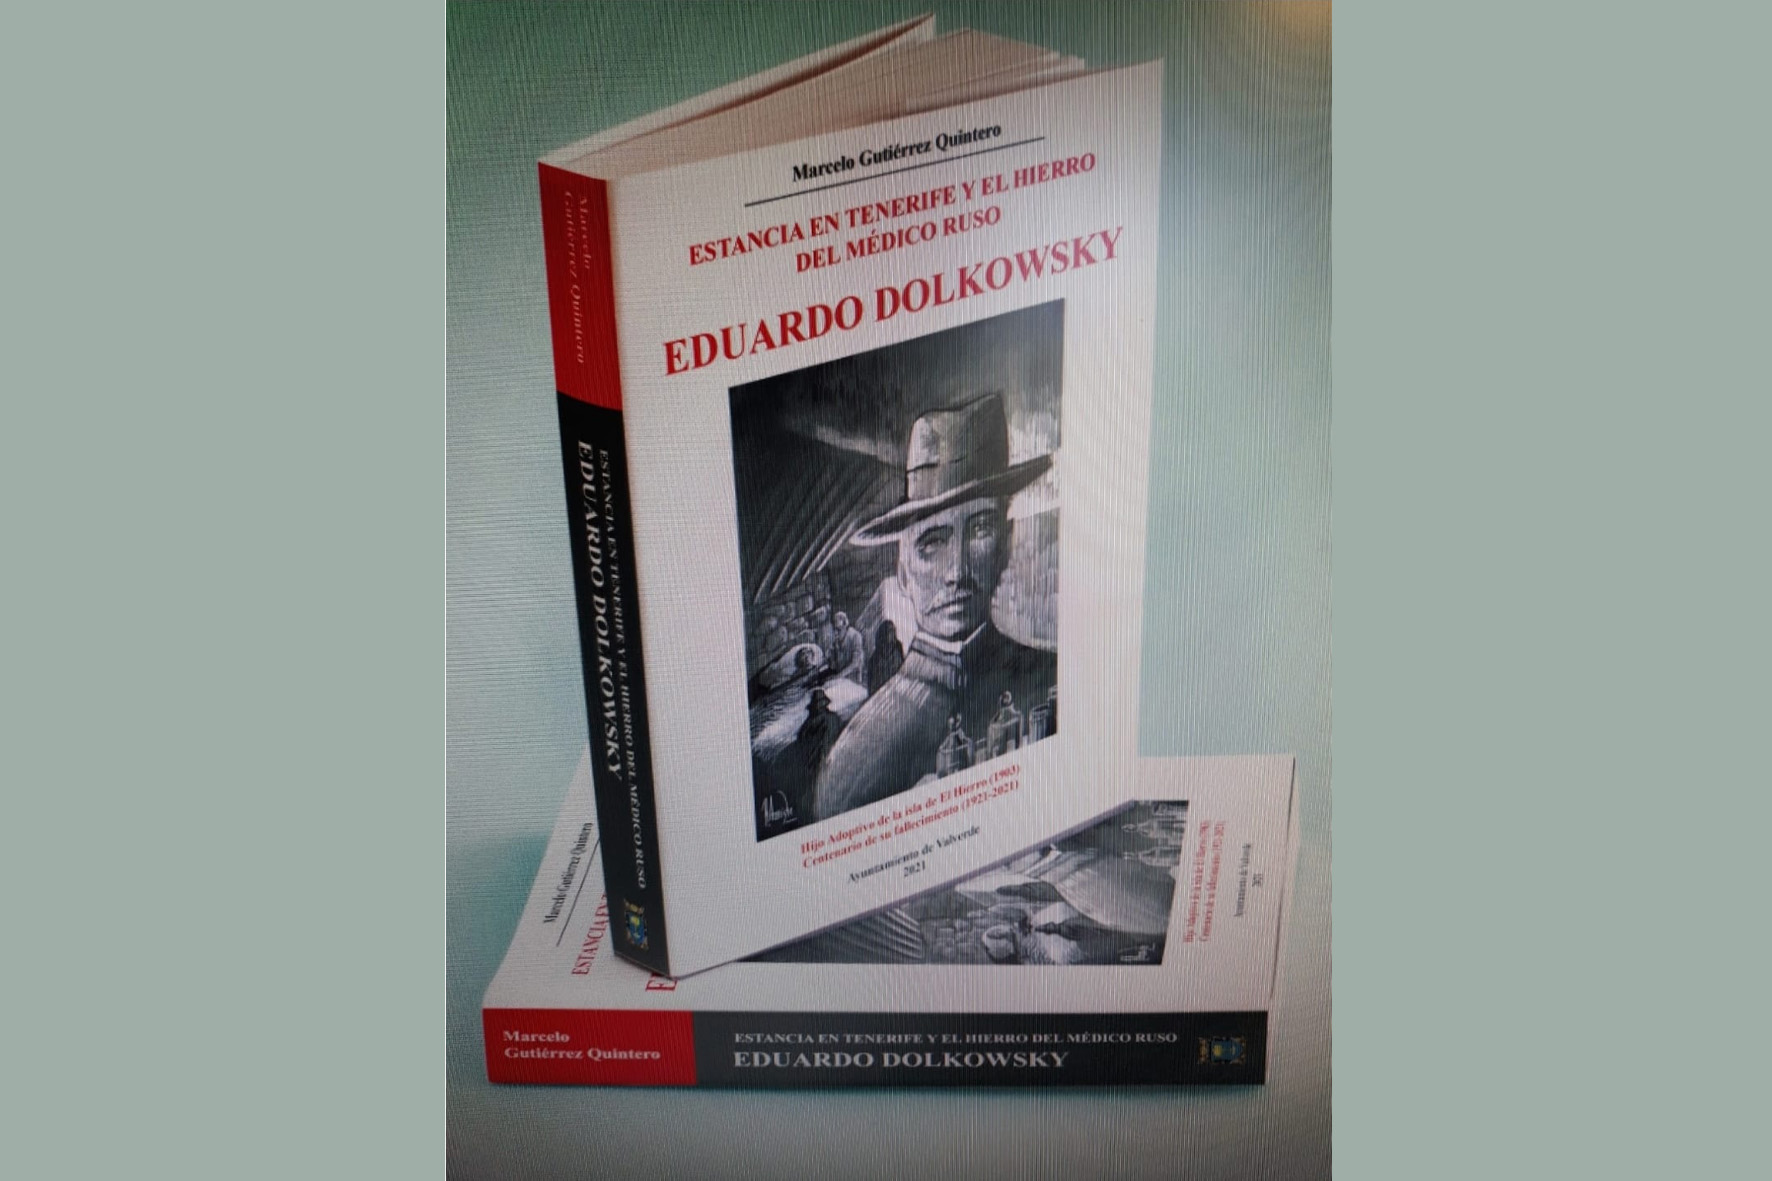 Marcelo Gutiérrez Quintero presenta el libro “Estancia en Tenerife y El Hierro del médico ruso Eduardo Dolkowsky”